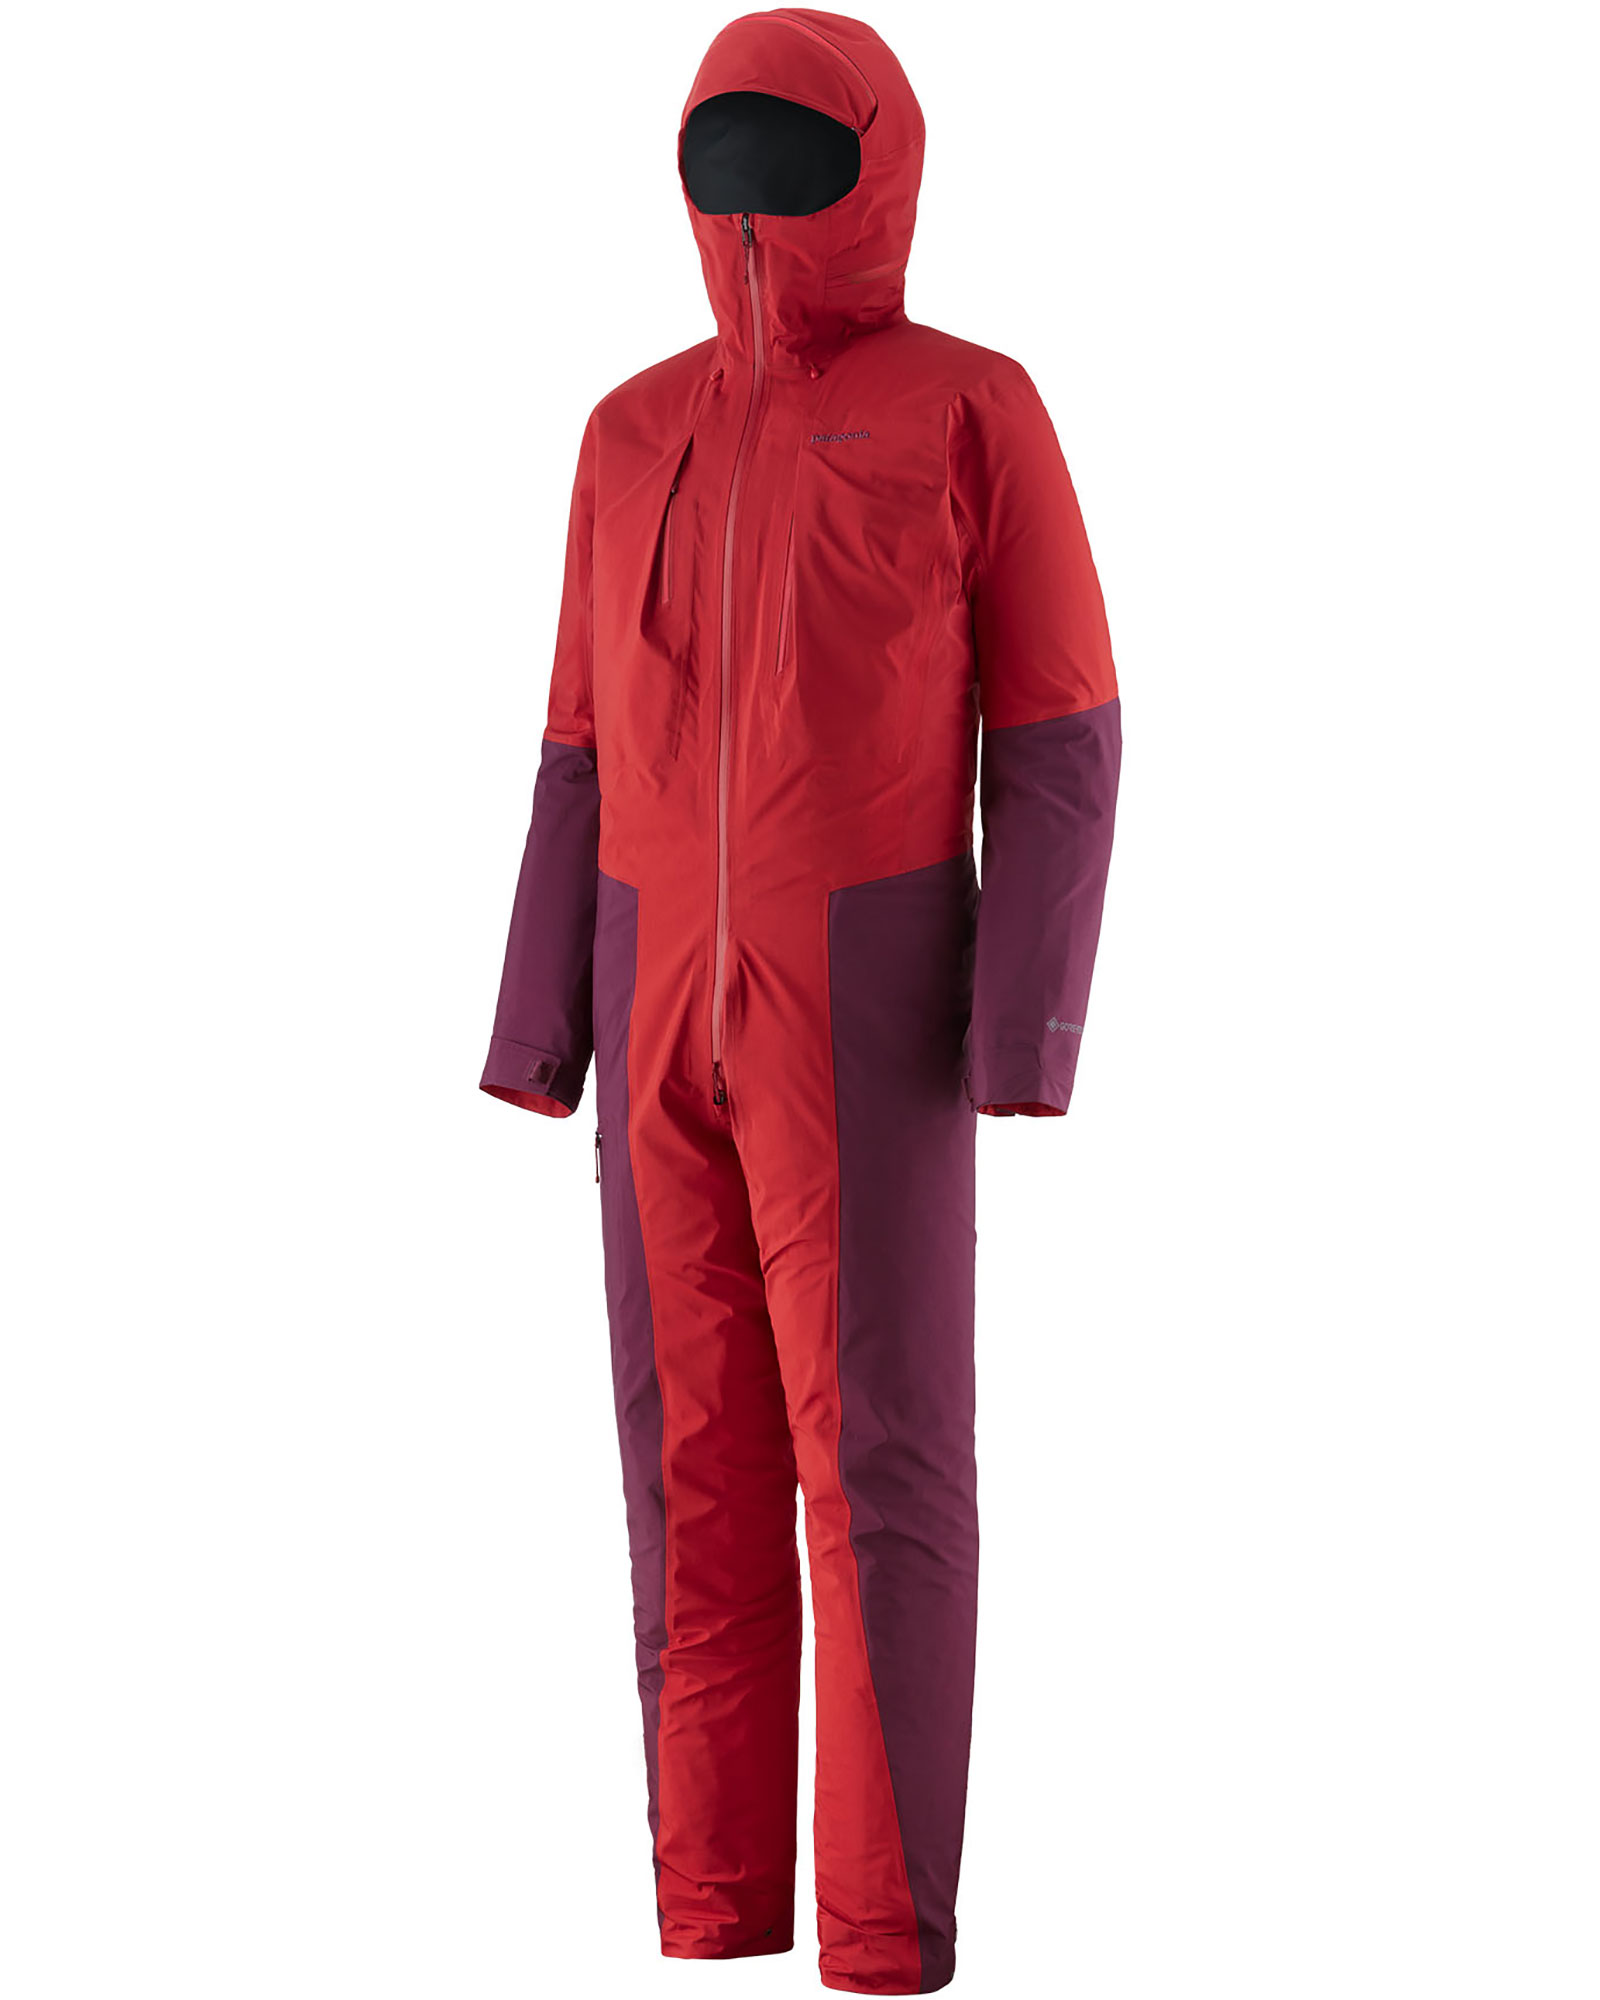 Patagonia GORE-TEX Alpine Suit 0